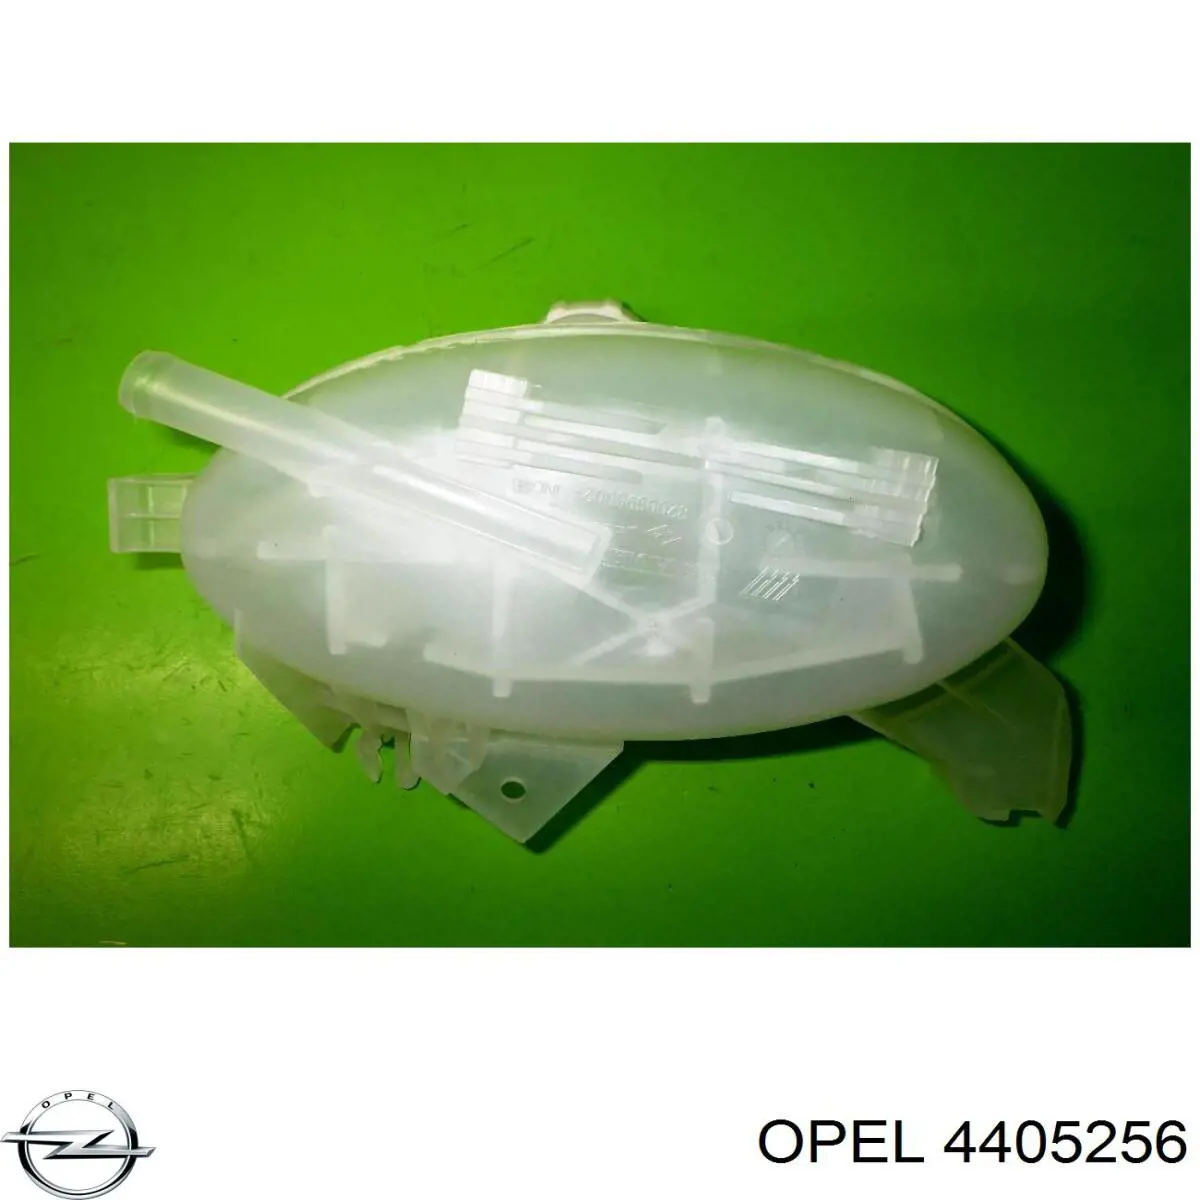 4405256 Opel vaso de expansión